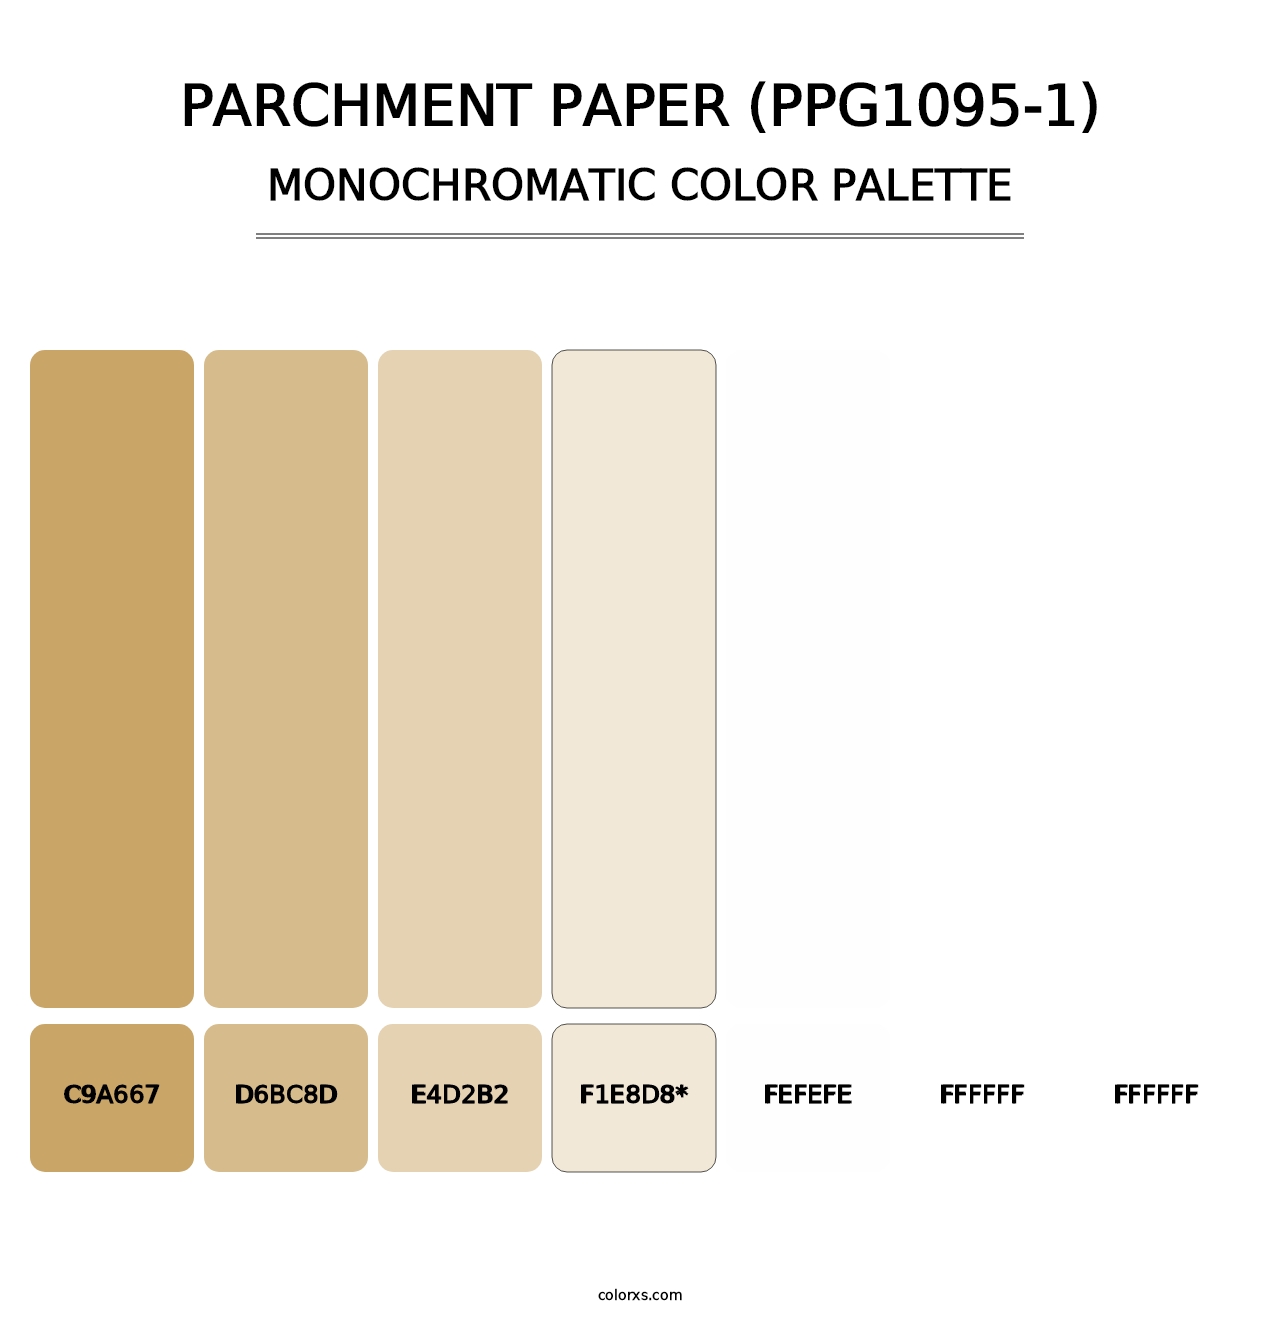 Parchment Paper (PPG1095-1) - Monochromatic Color Palette